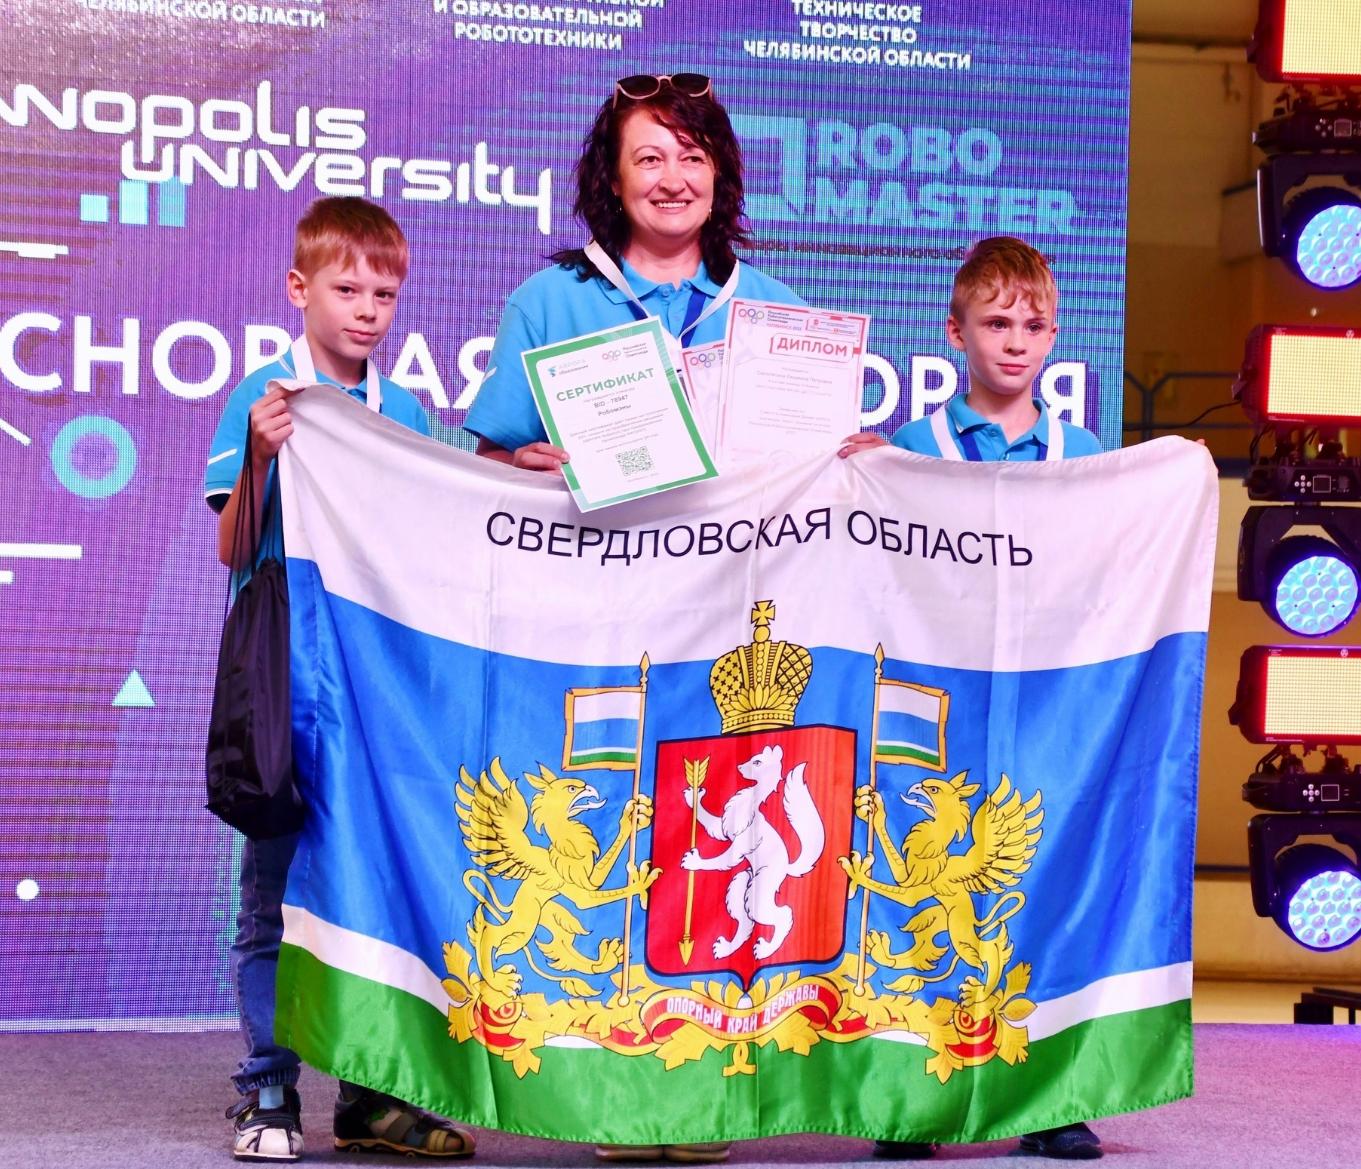 Робомэны из Сухого Лога - призеры Российской Робототехнической Олимпиады!